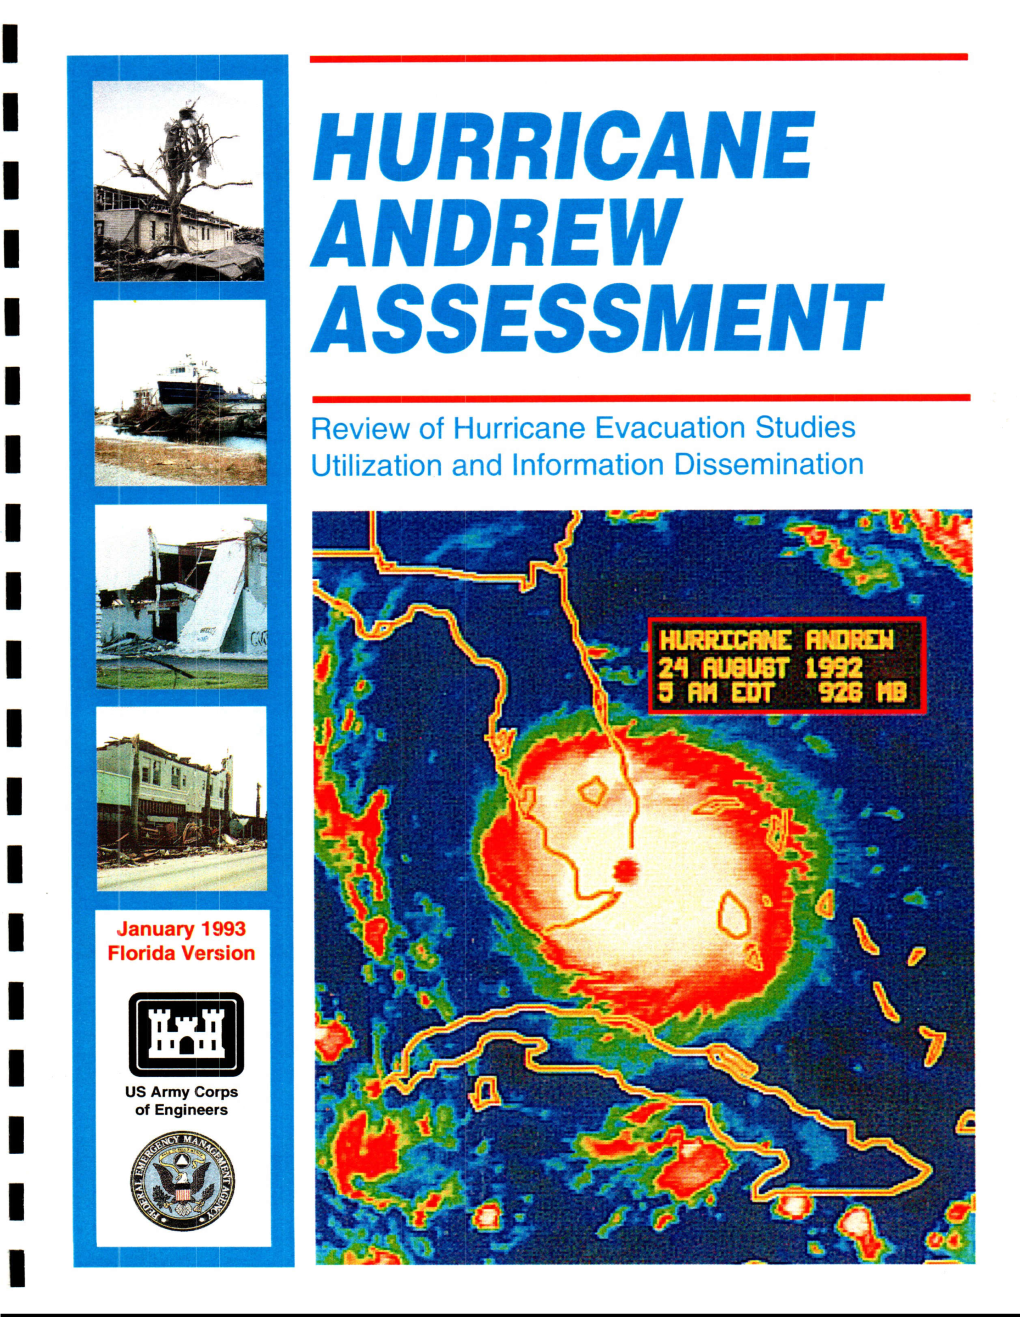 Andrew Assessment